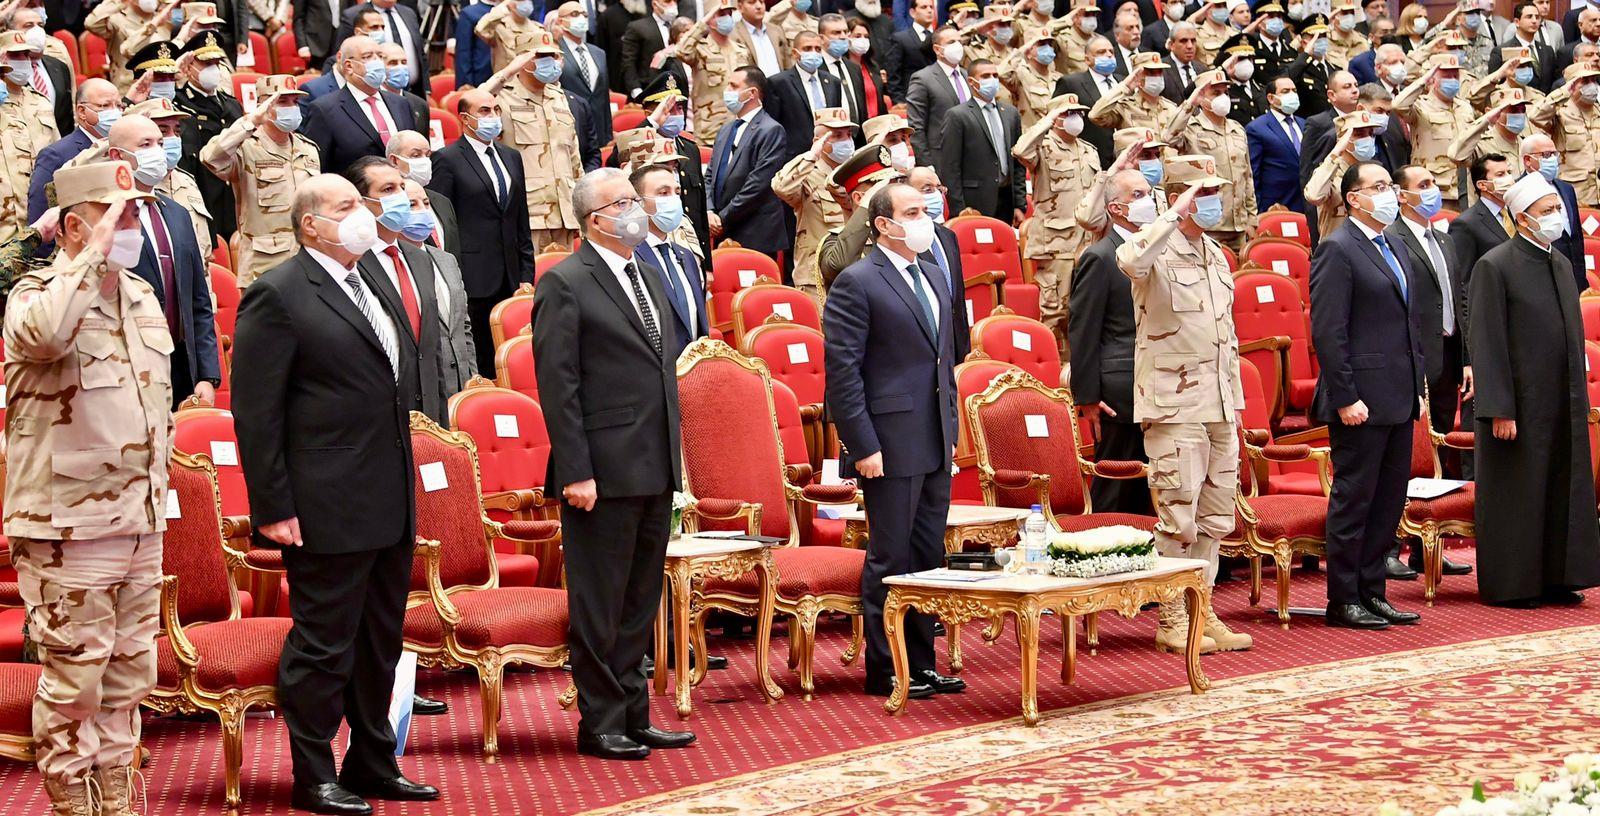 الرئيس السيسي يكرم عددًا من أسر الشهداء والمصابين في يوم الشهيد 